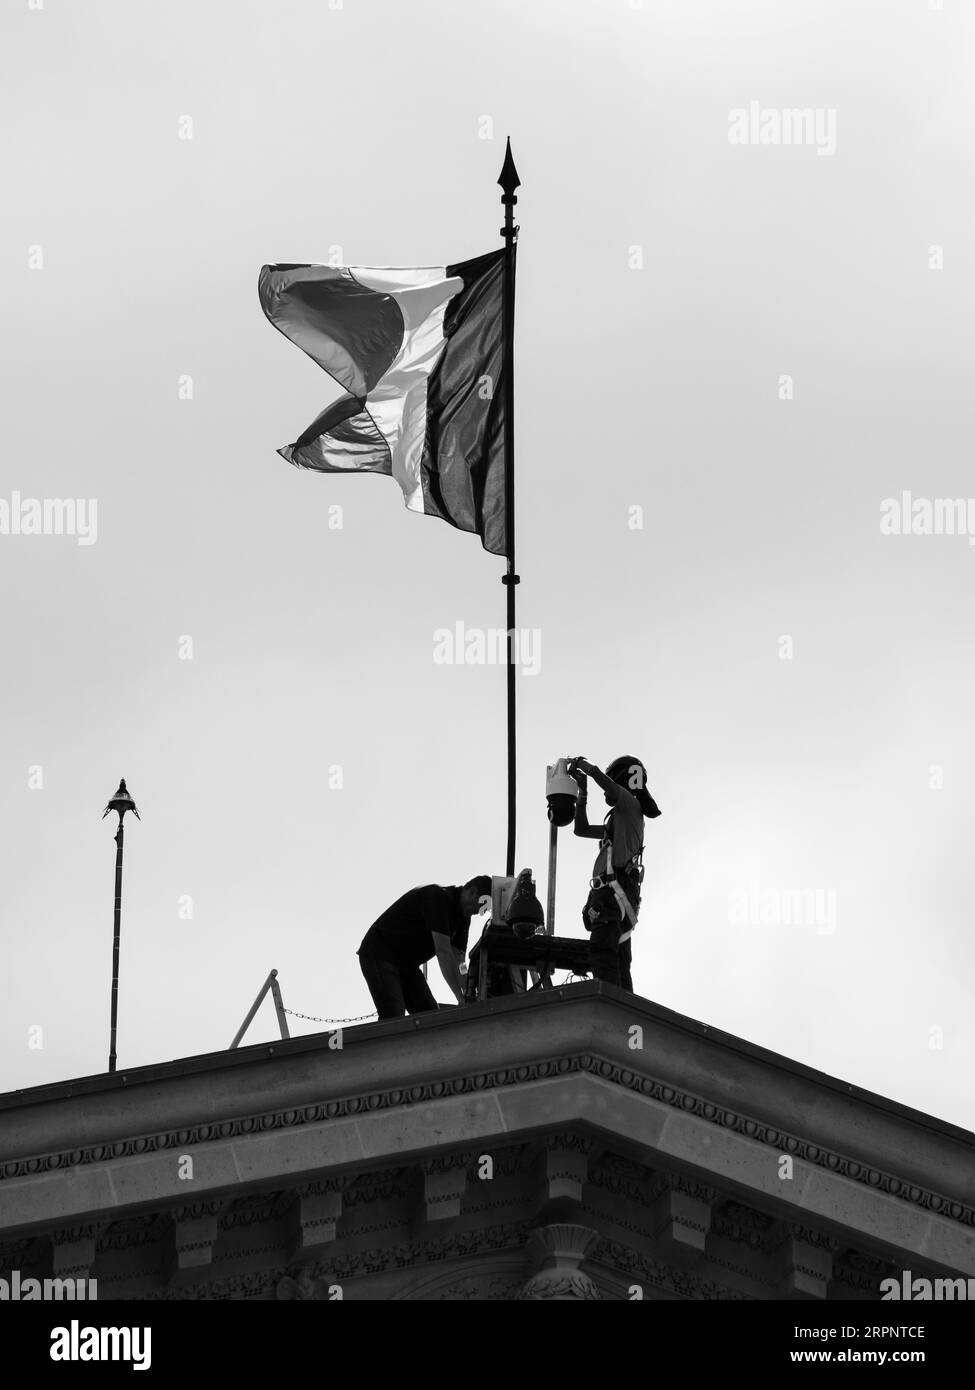 Lavoratori B&N, fissaggio telecamera di sicurezza, sotto la bandiera francese, Assemblea nazionale francese, Parigi, Francia, Europa, UE. Foto Stock